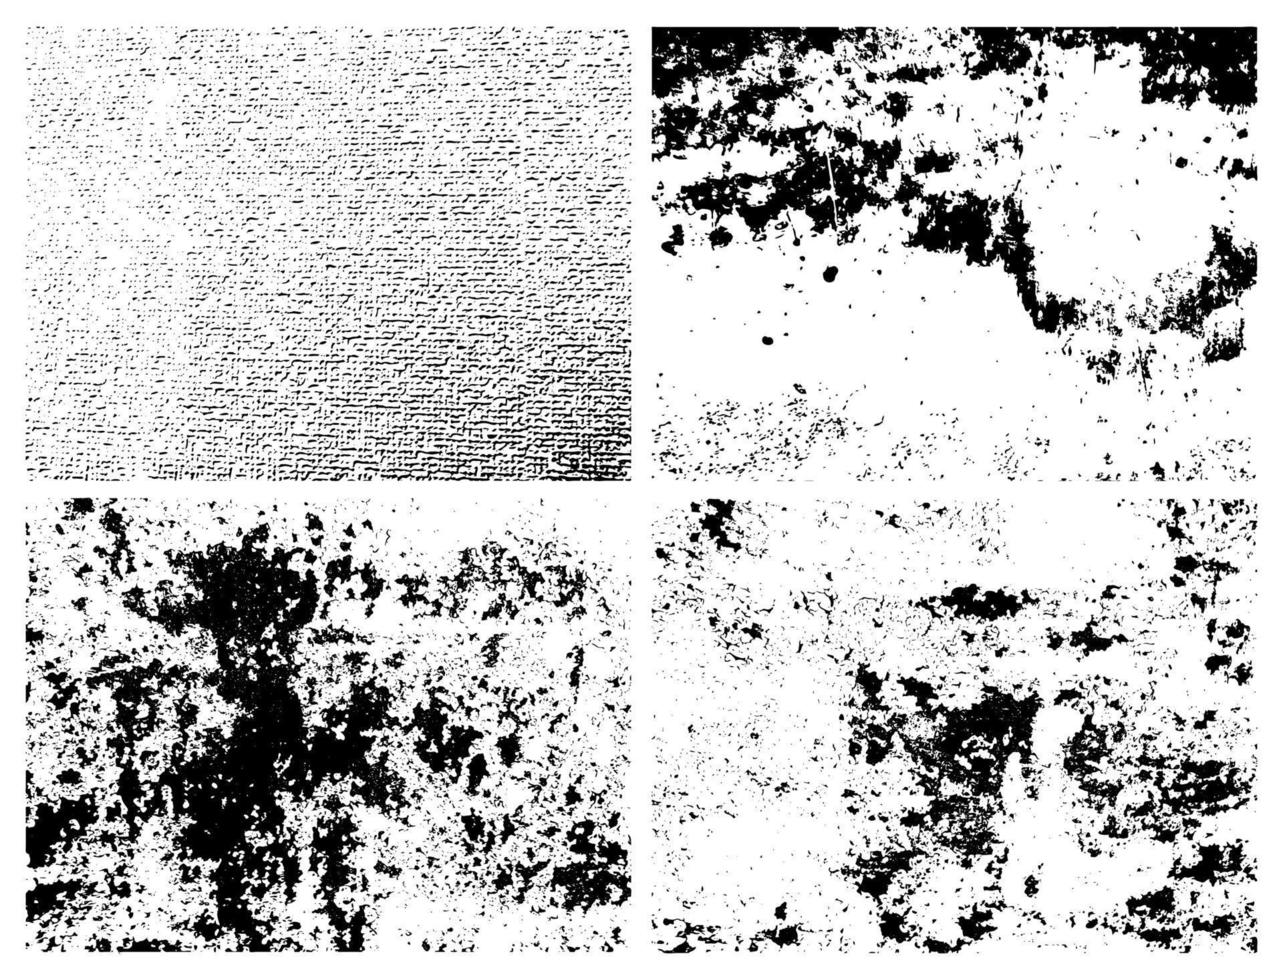 grunge korrelig vuil textuur. reeks van vier abstract stedelijk nood bedekking achtergronden. vector illustratie